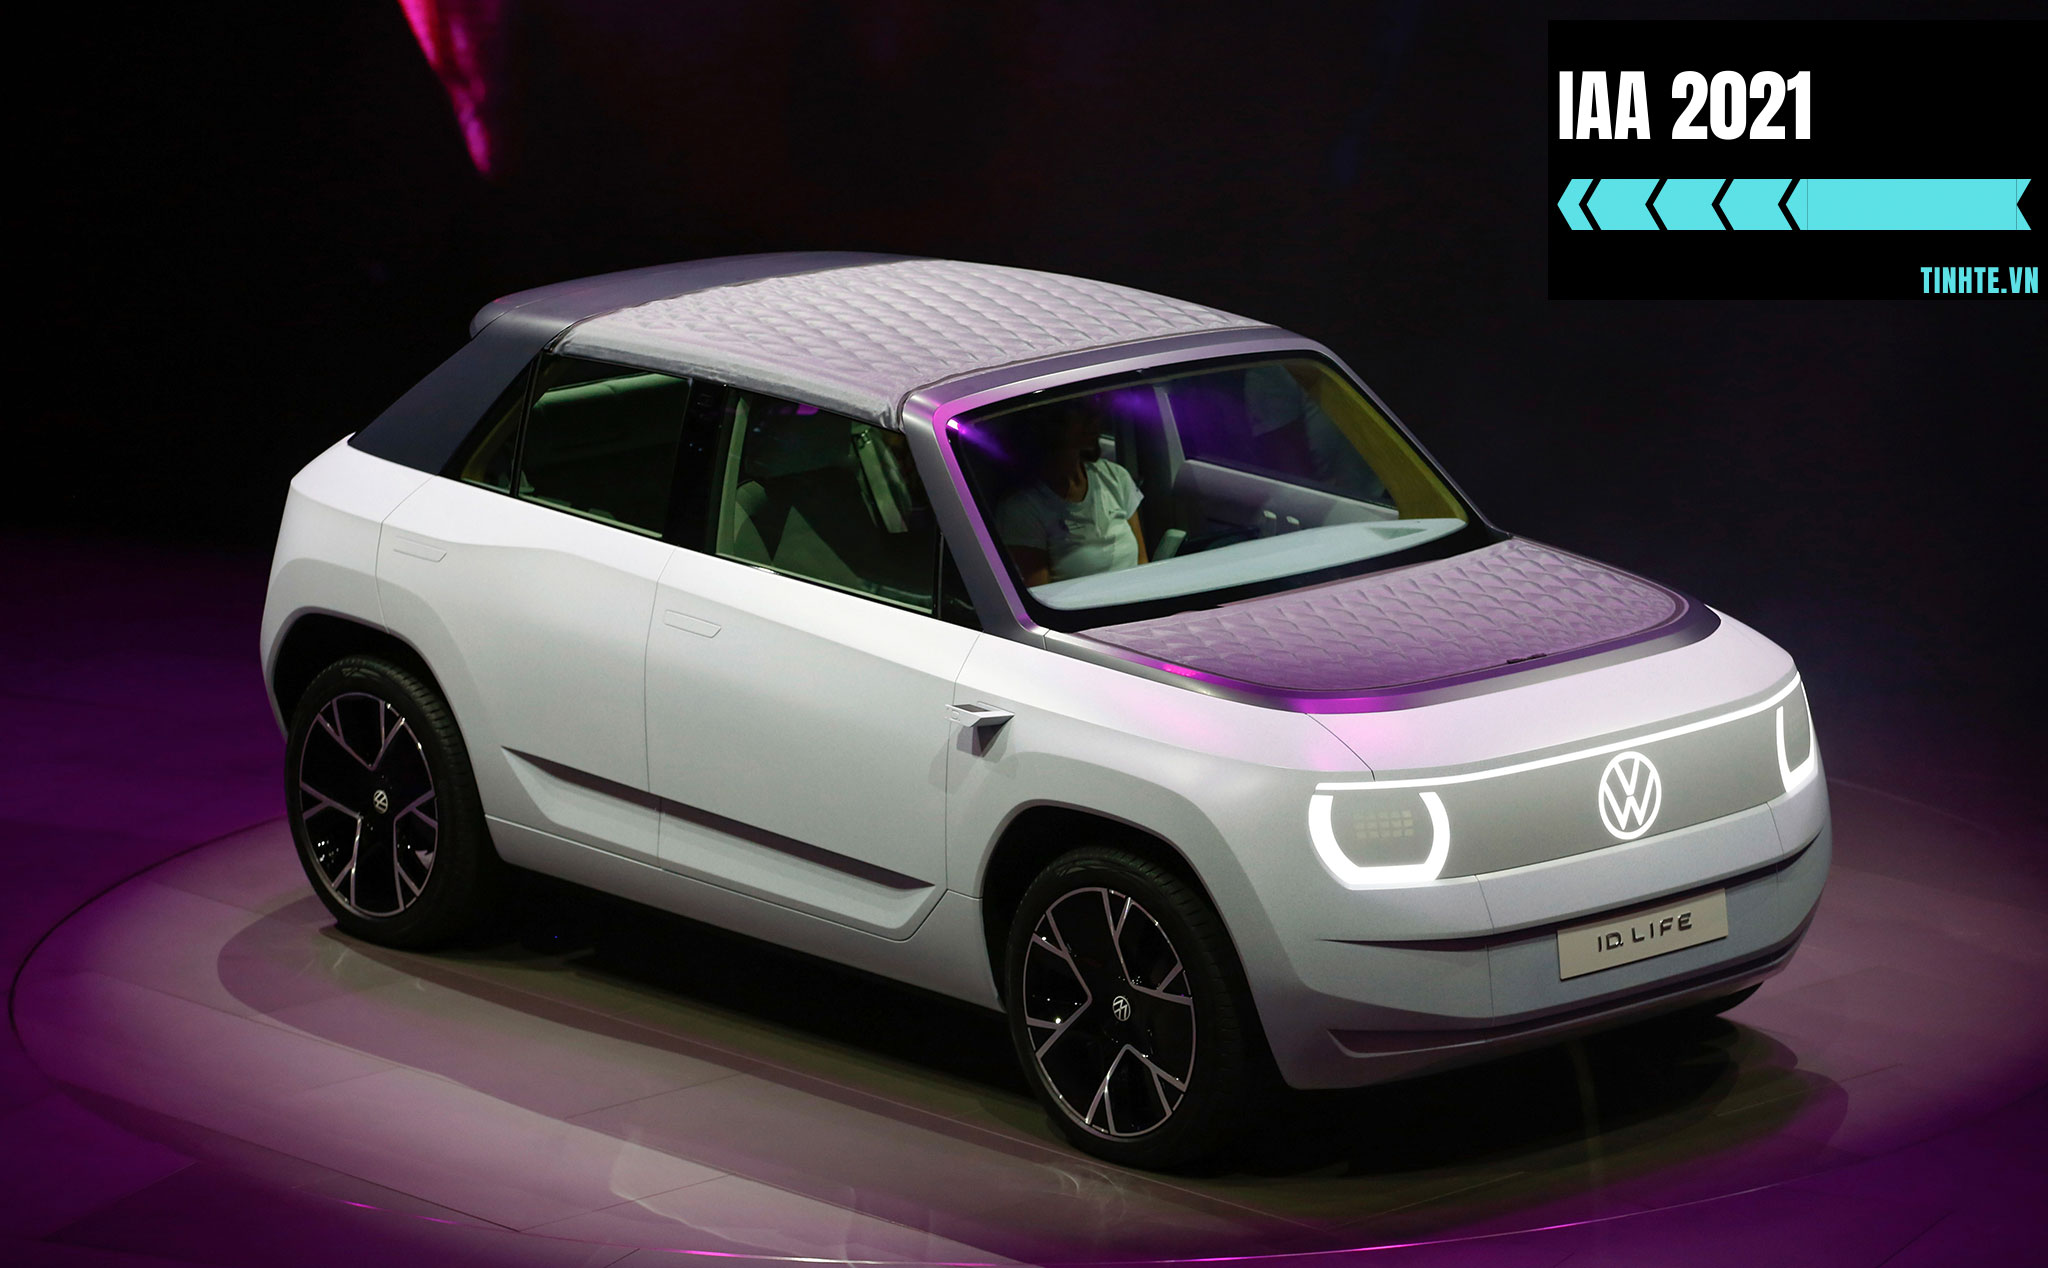 VW ID Life Concept: sạc 1 lần chạy 400 km, sản xuất từ năm 2025, giá khoảng 24.000 USD